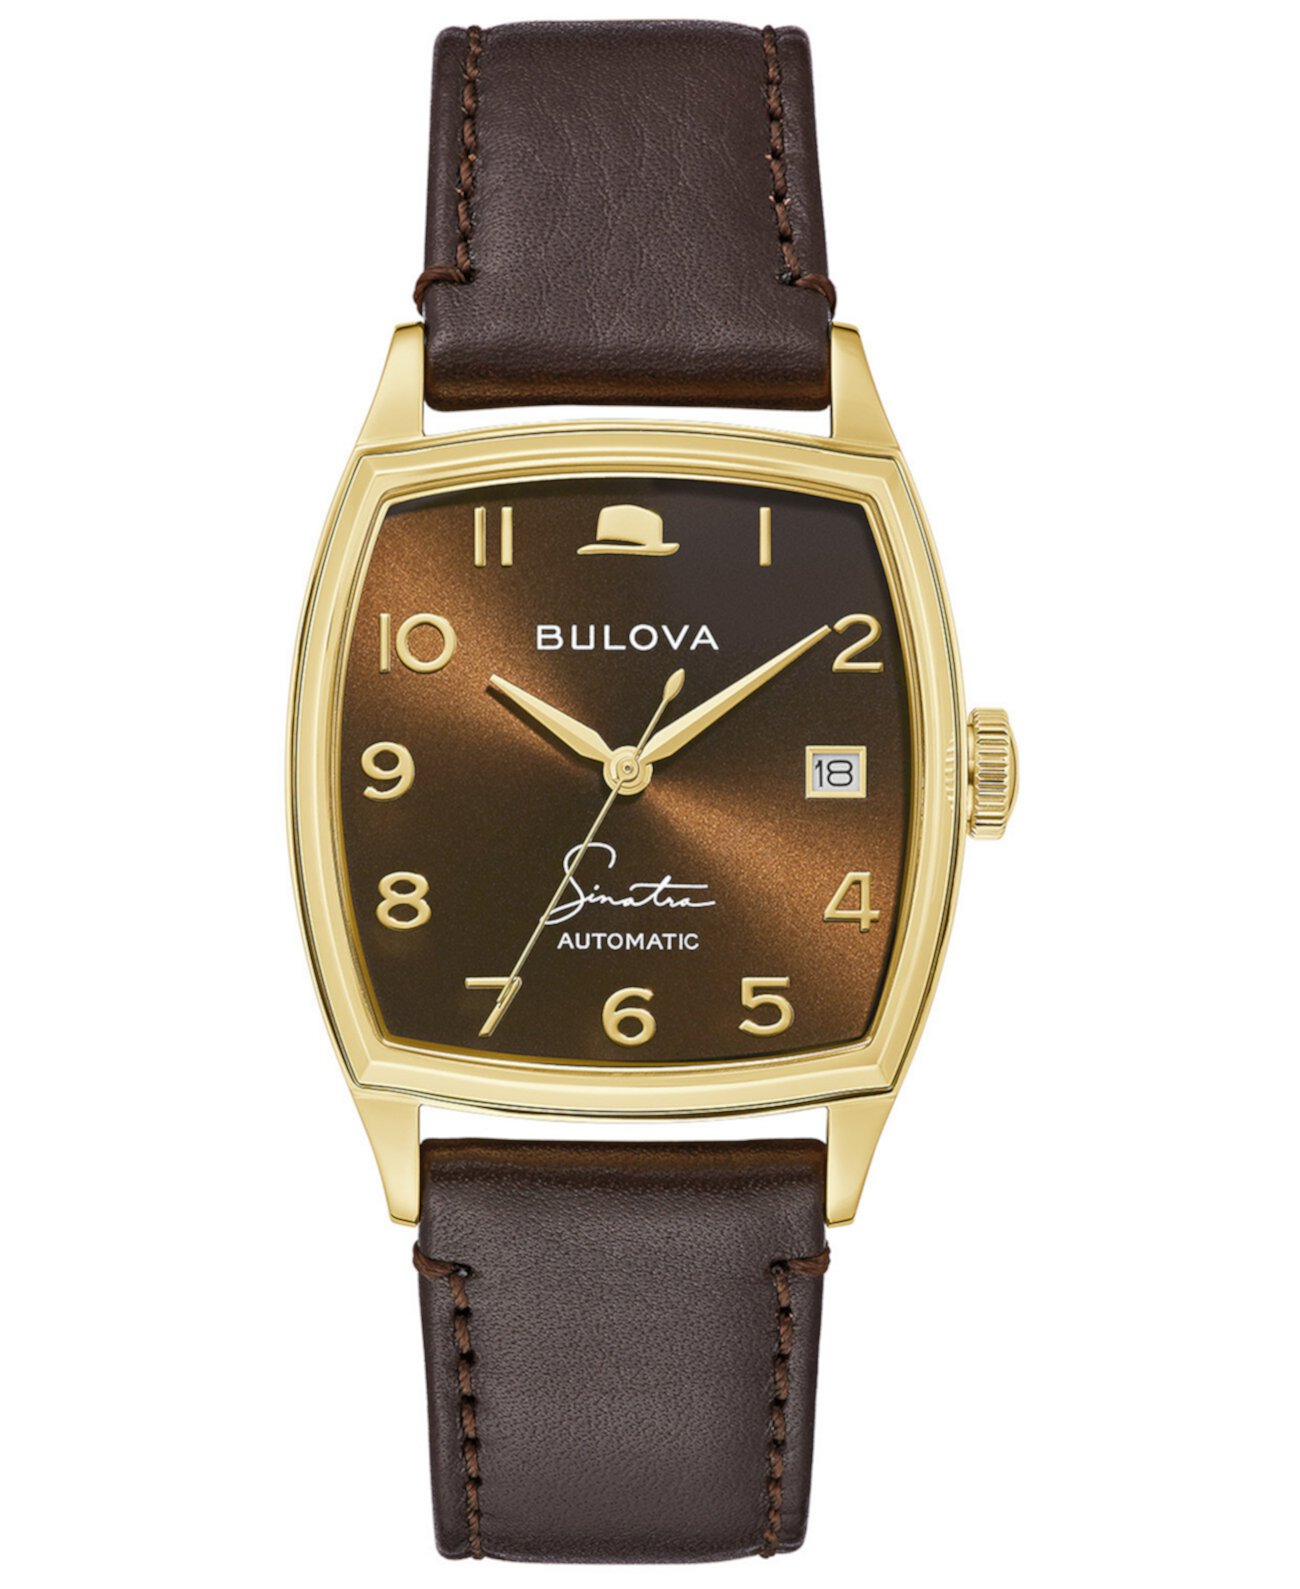 Мужские наручные часы Frank Sinatra с автоматическим коричневым кожаным ремешком, 33,5x45 мм Bulova